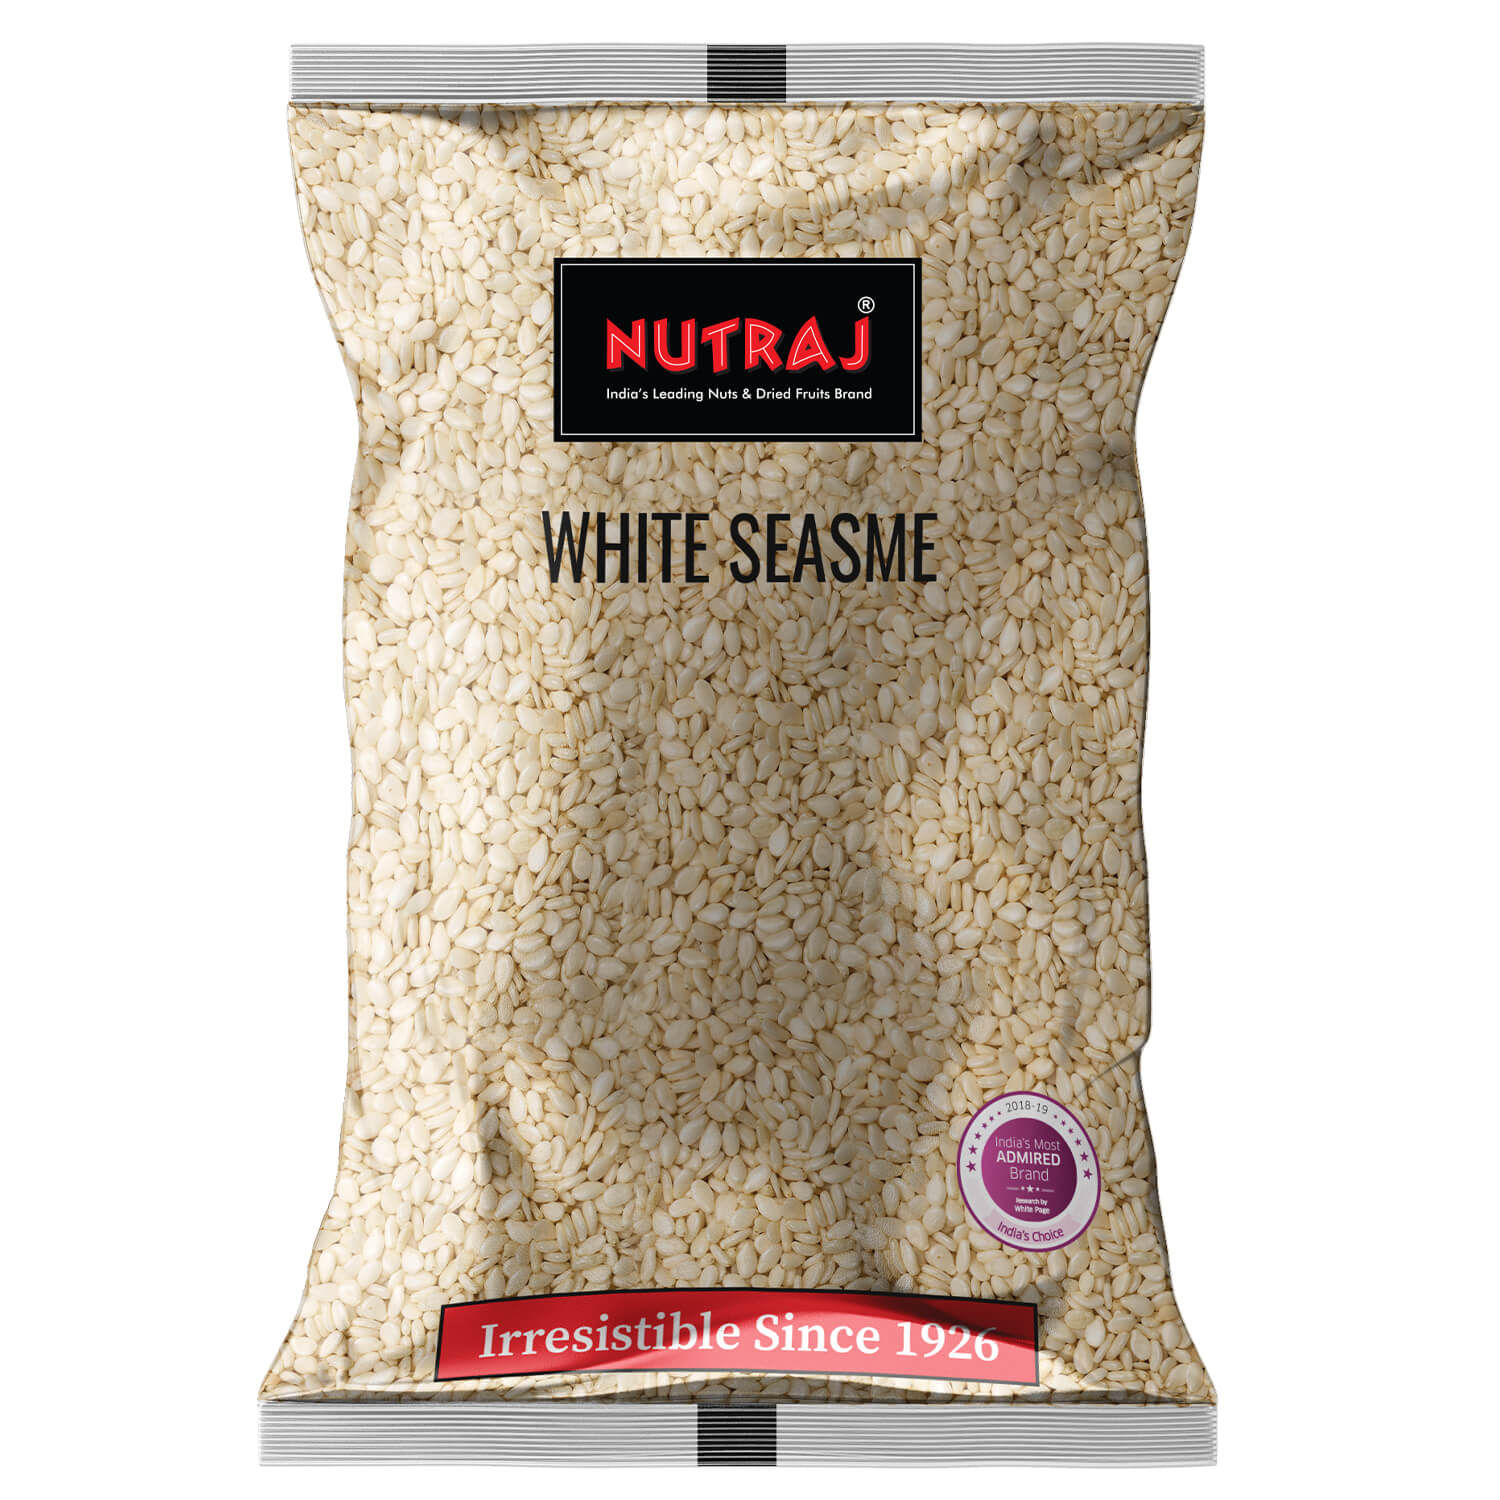 Nutraj White Sesame 50g